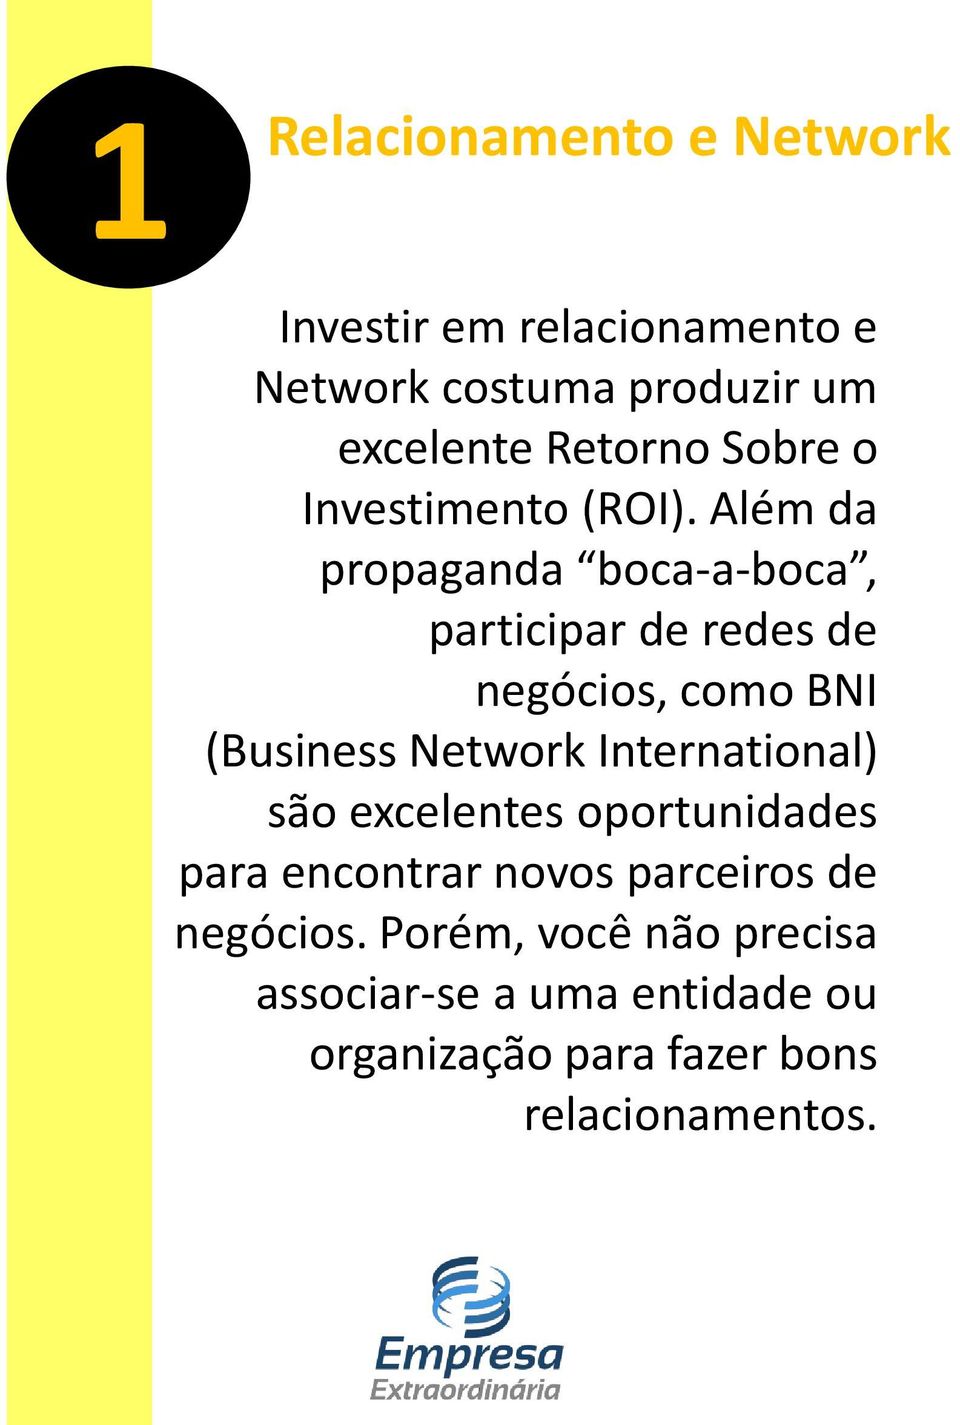 Além da propaganda boca-a-boca, participar de redes de negócios, como BNI (Business Network